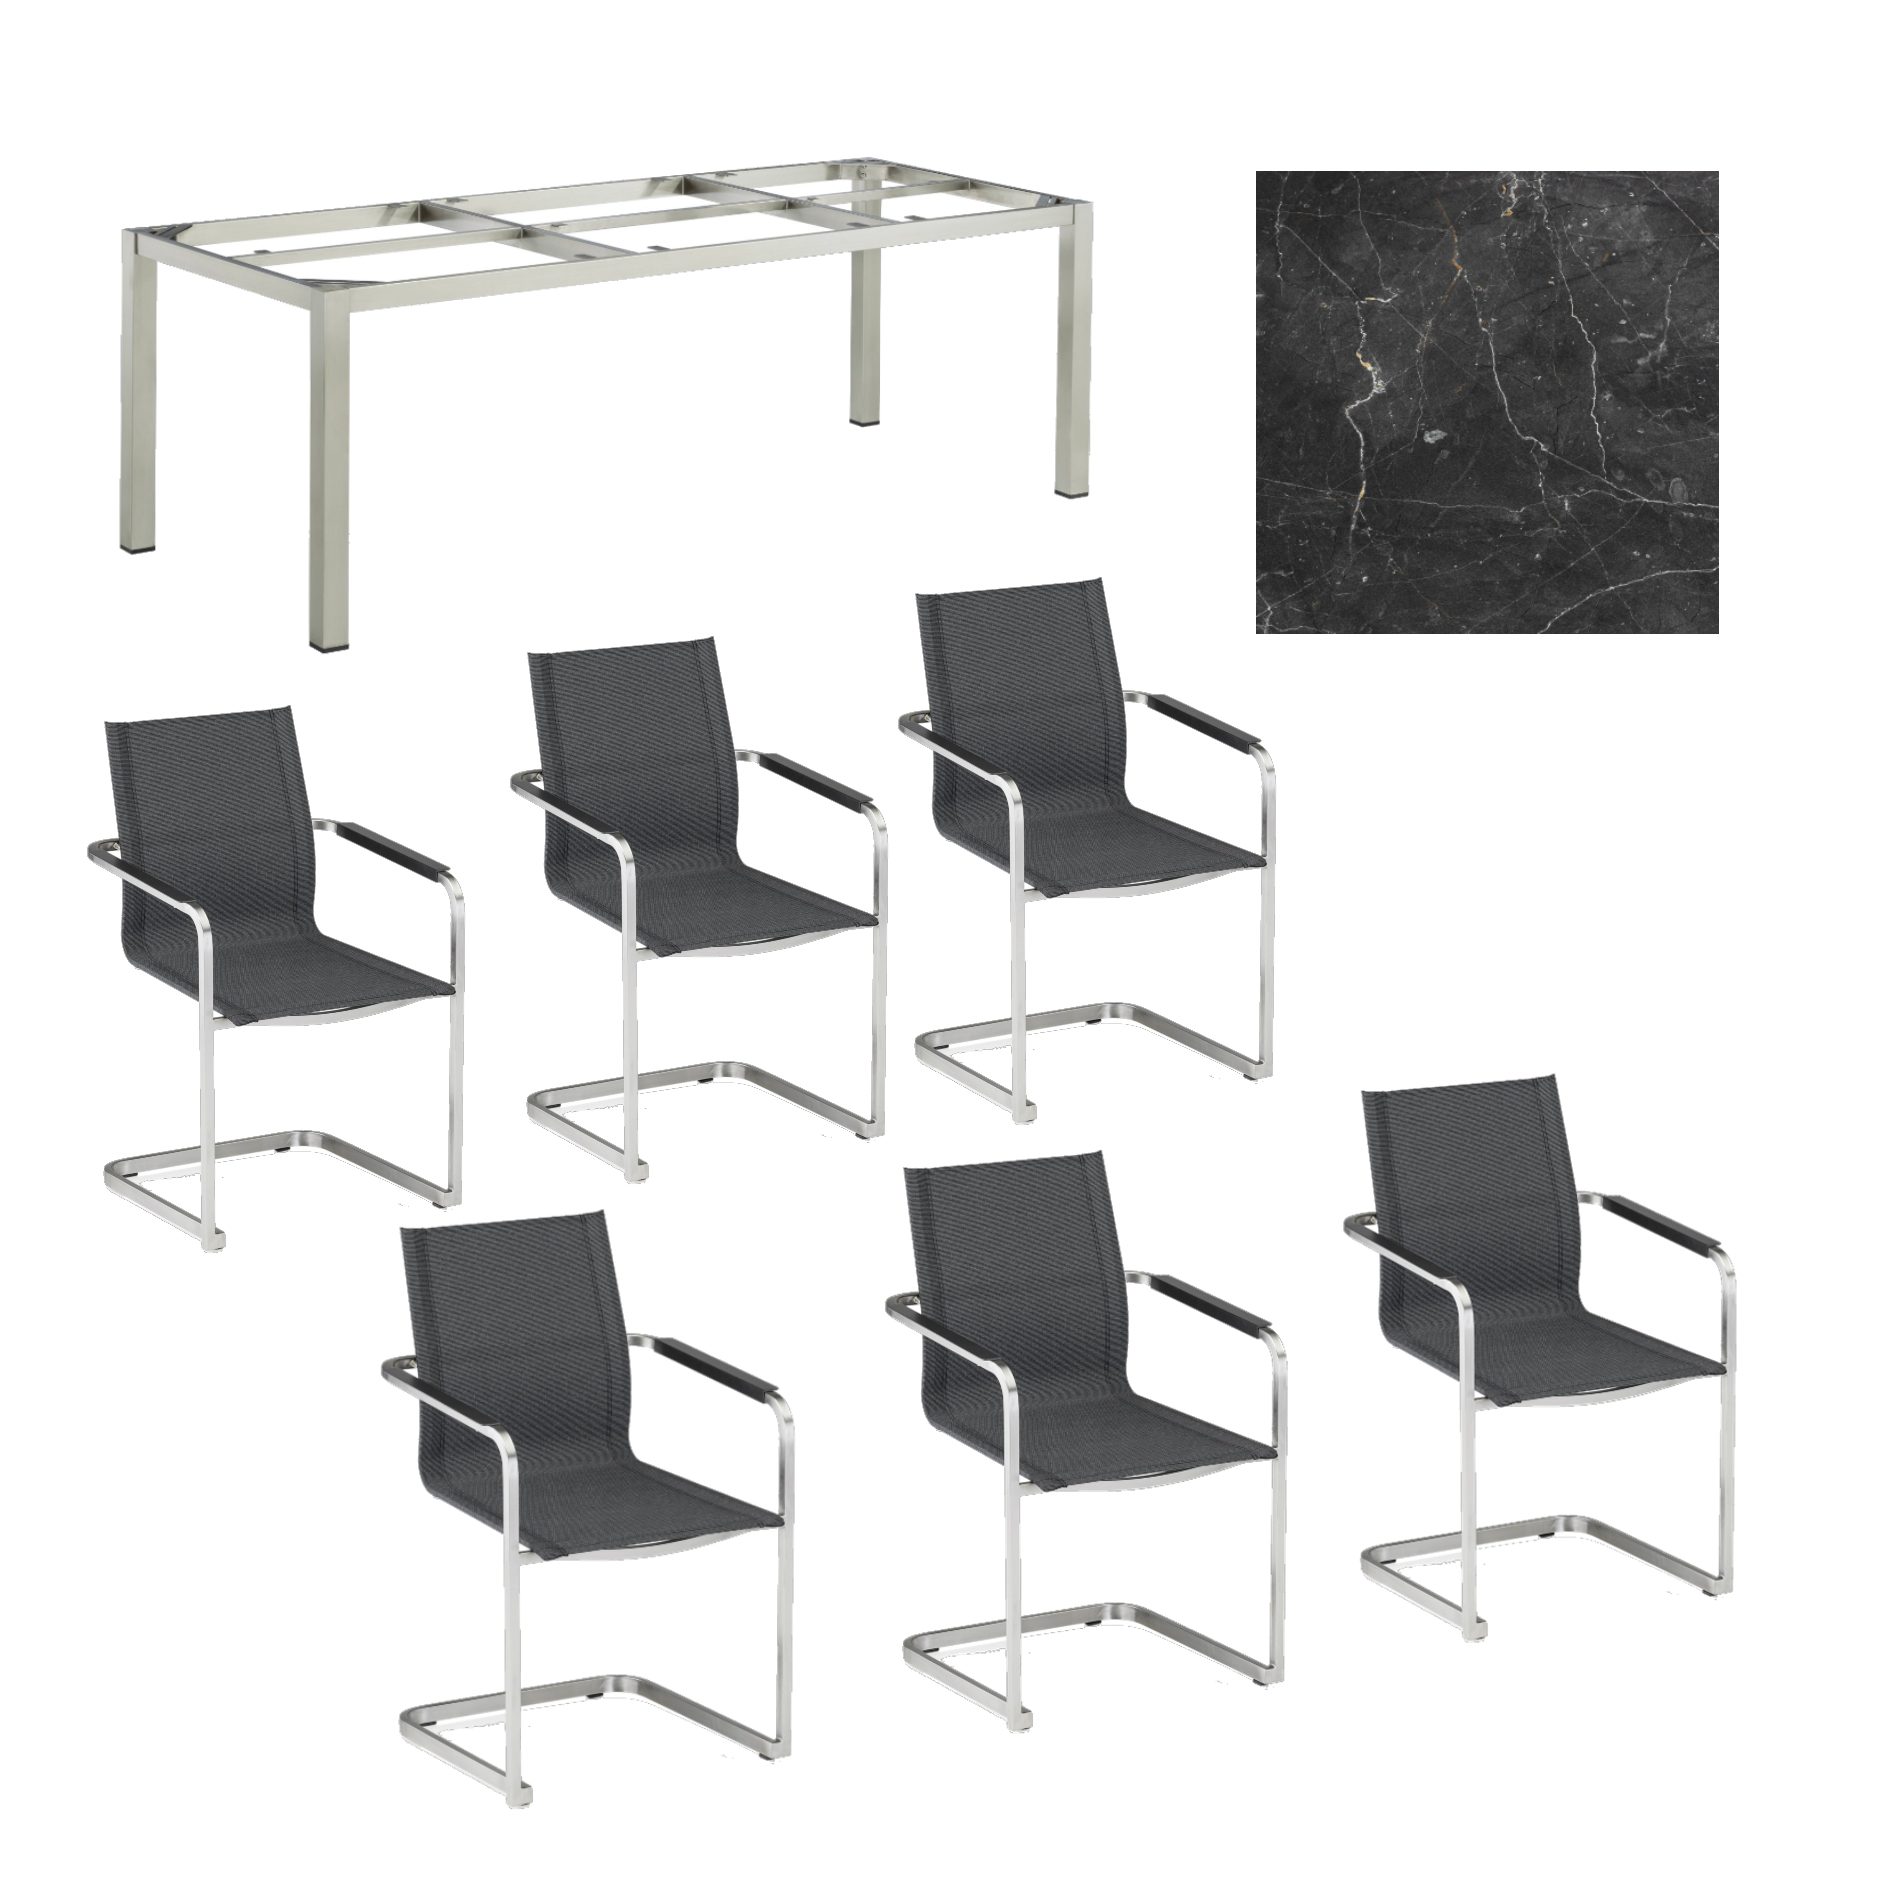 Kettler Gartenmöbel-Set mit "Feel" Freischwinger und "Cubic" Tisch 220x95 cm, Gestelle Edelstahl, Sitz grau meliert, Tischplatte HPL Marmor grau